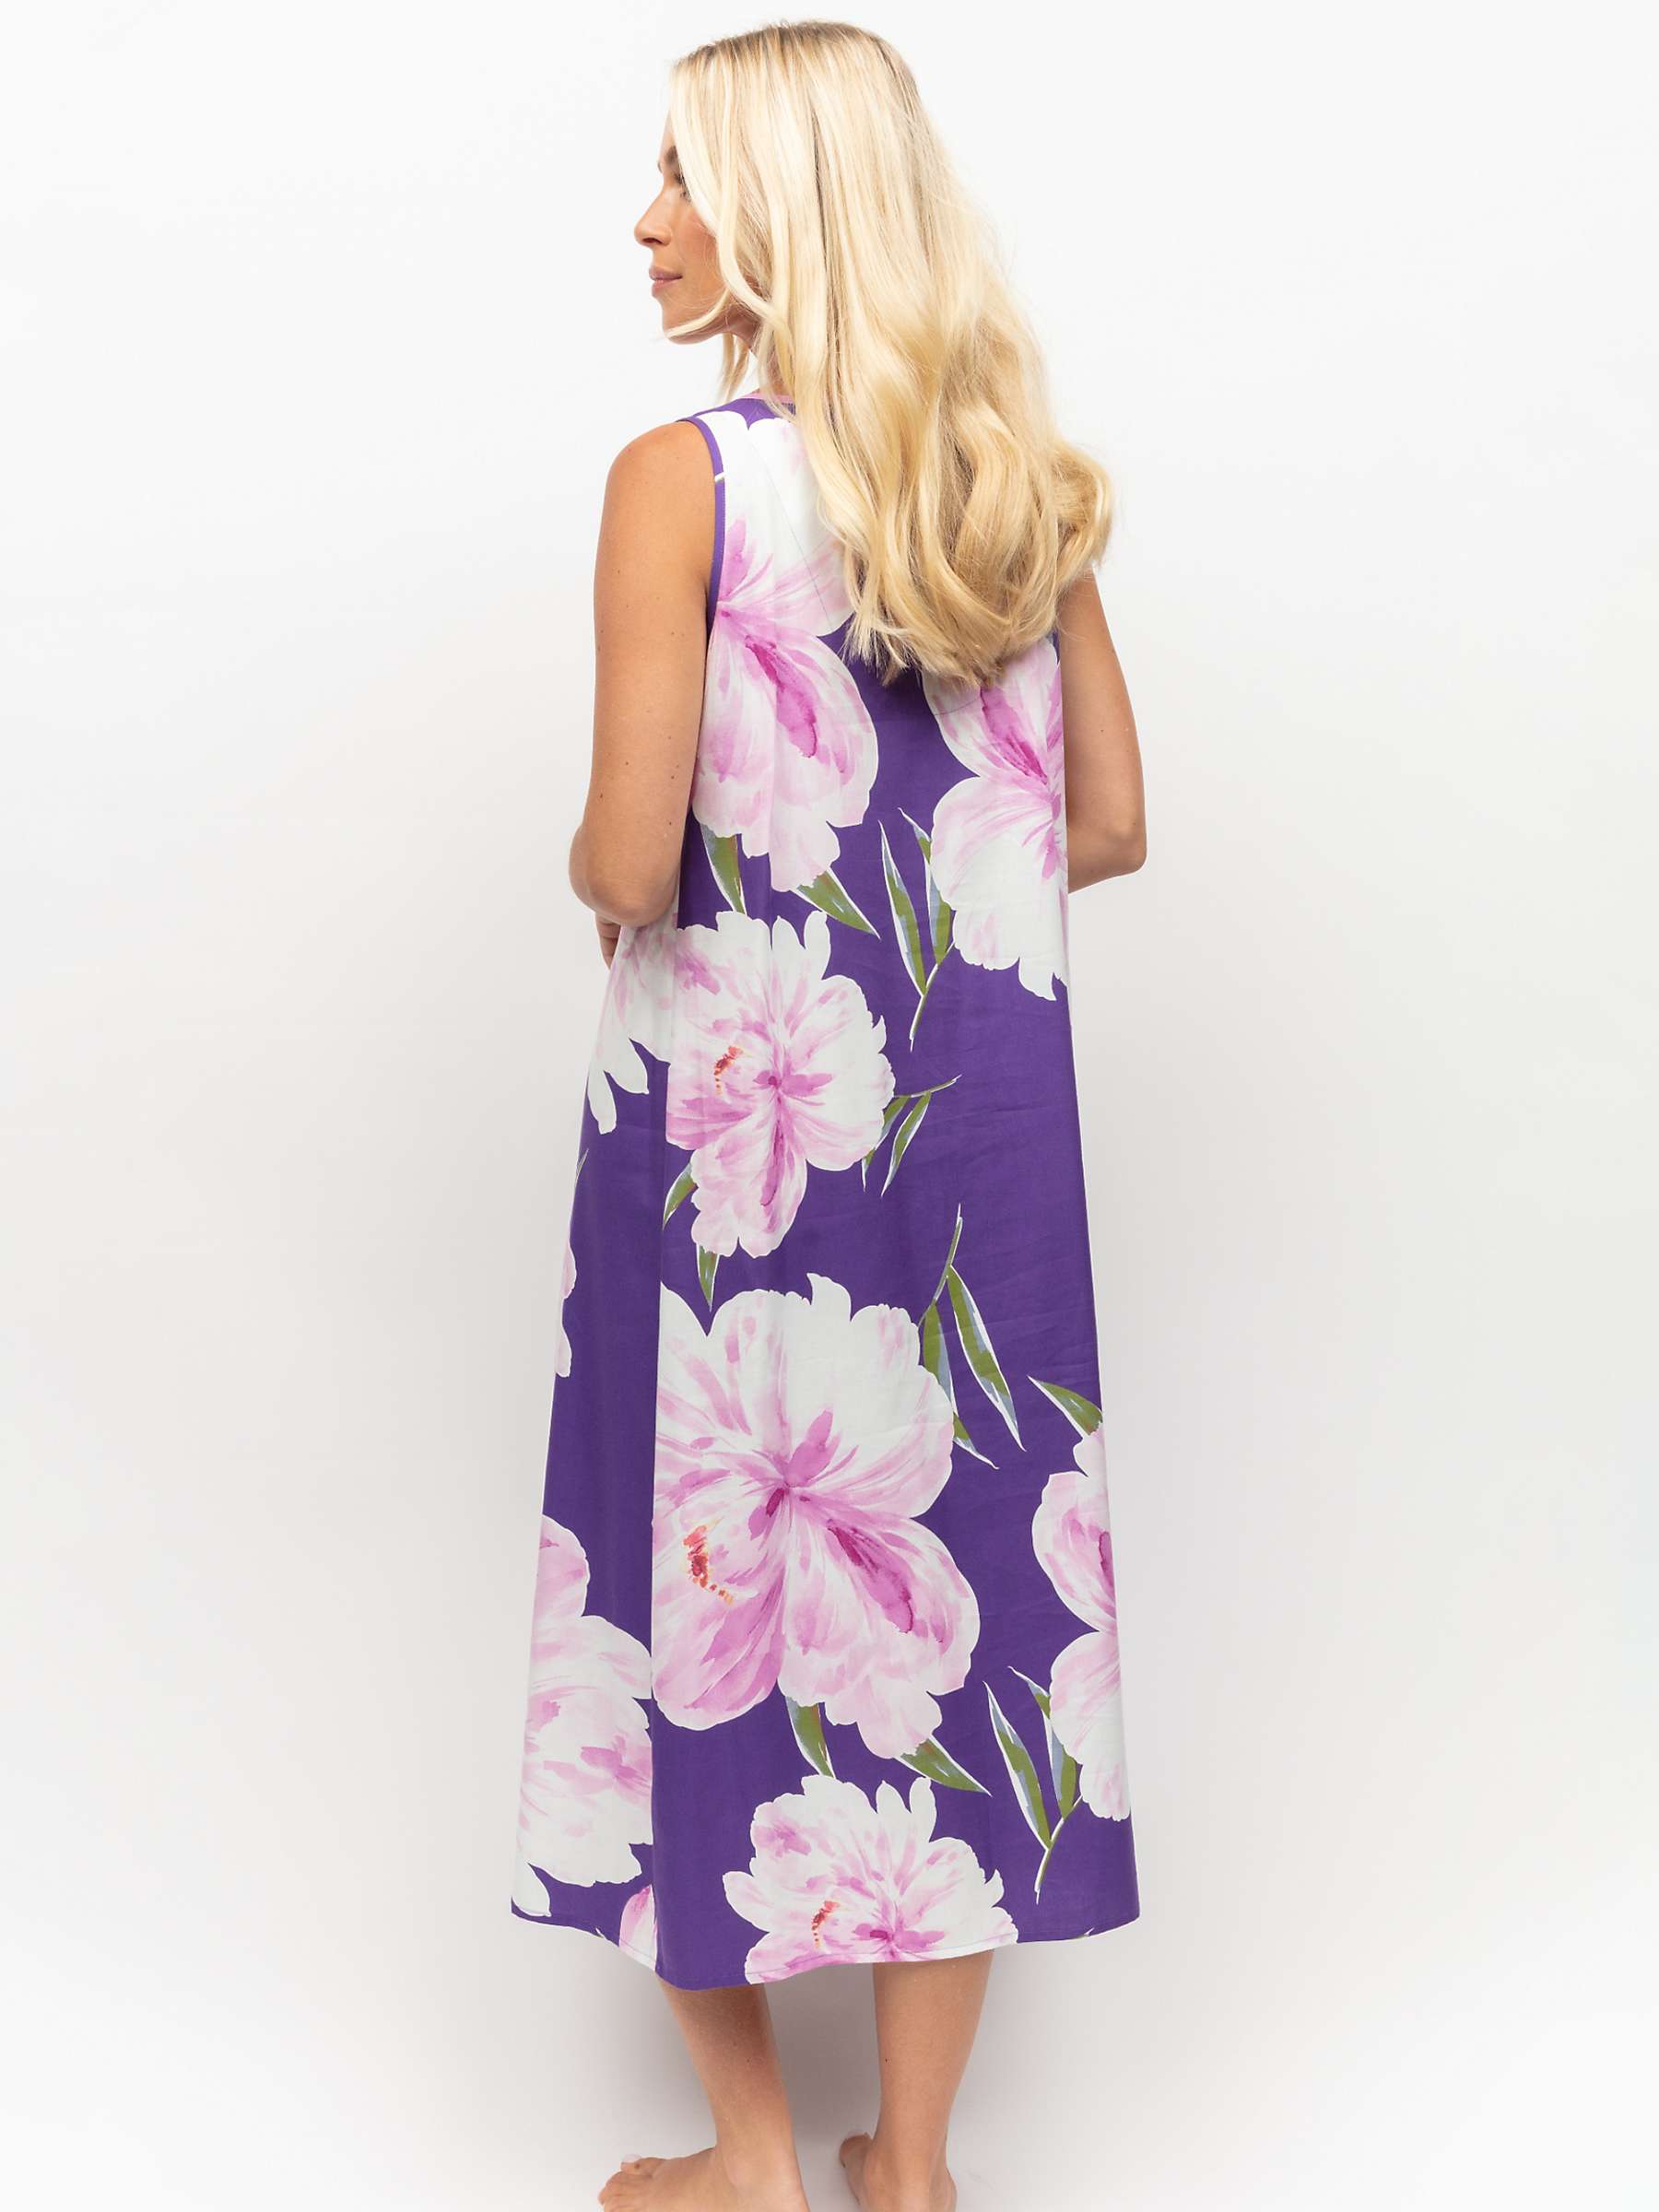 Buy Cyberjammies Floral Sleeveless Nightdress, Purple/Multi Online at johnlewis.com